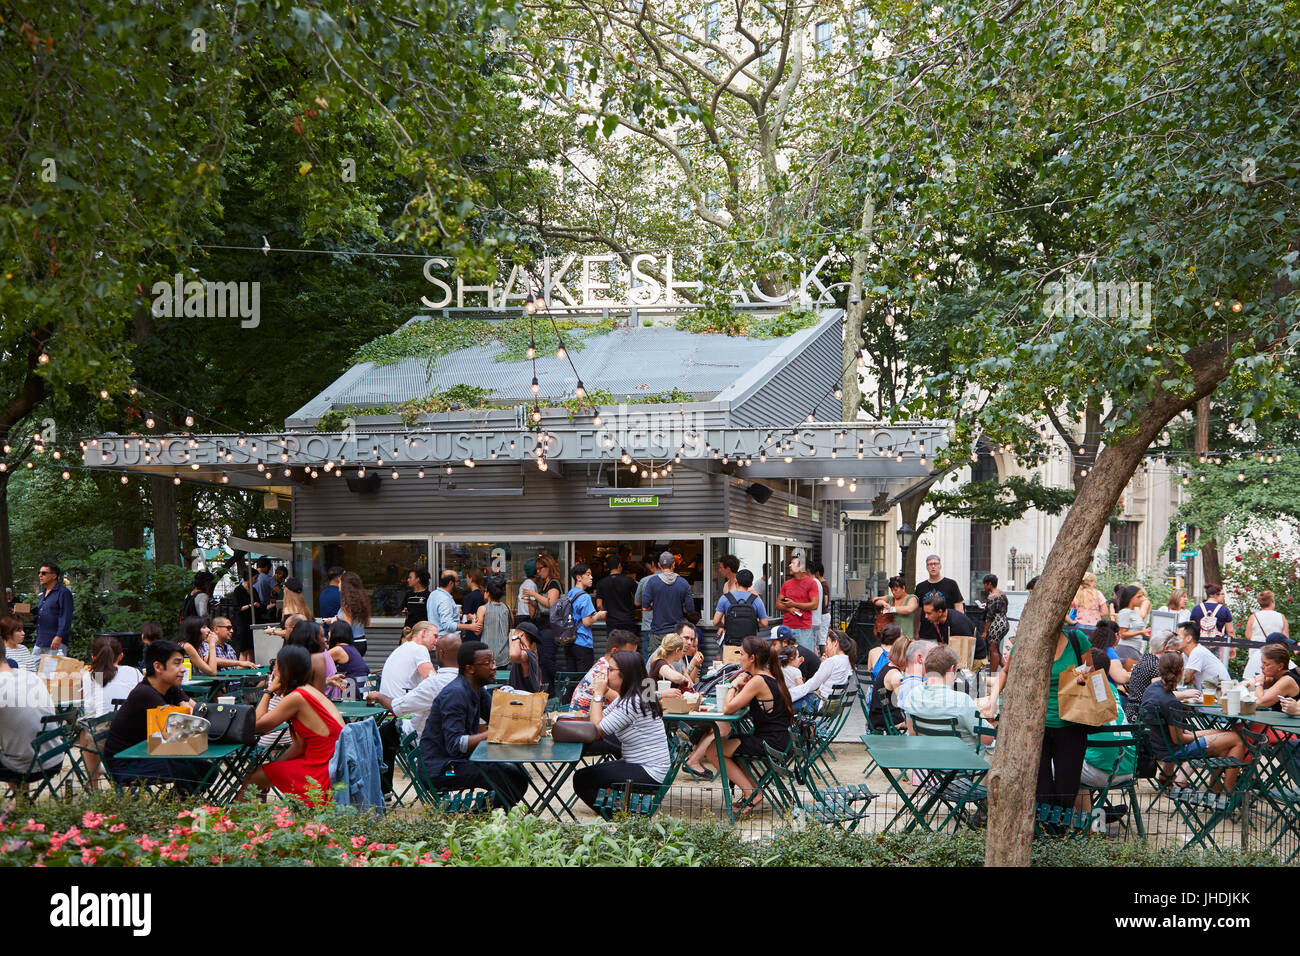 NEW YORK - 10 SEPTEMBRE : Shake Shack restaurant à Madison Square Park, avec des gens assis, les tables en plein air en été le 10 septembre 2016 à New York Banque D'Images